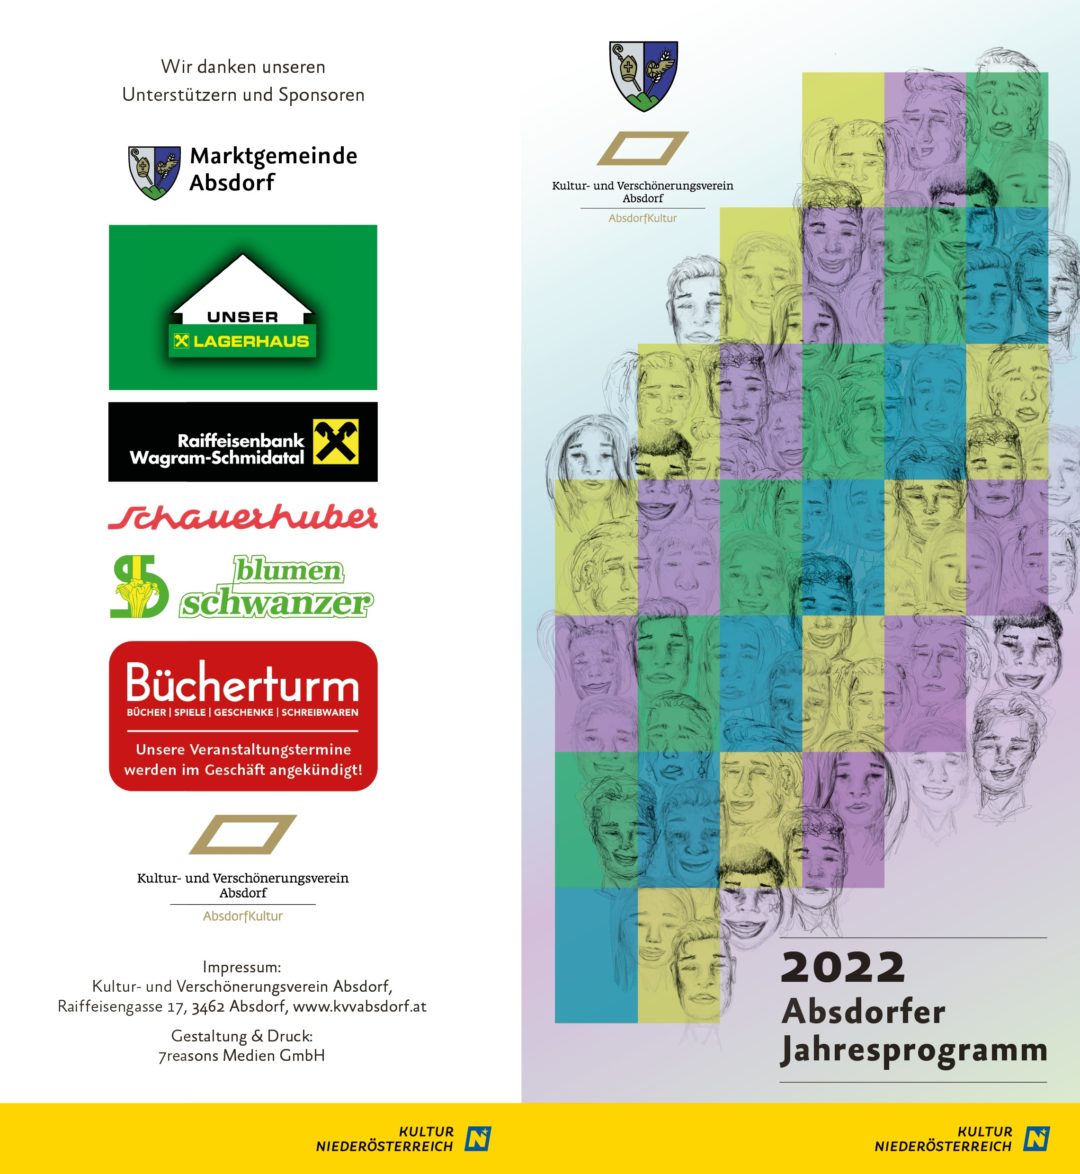 Absdorfer Jahresprogramm 2022